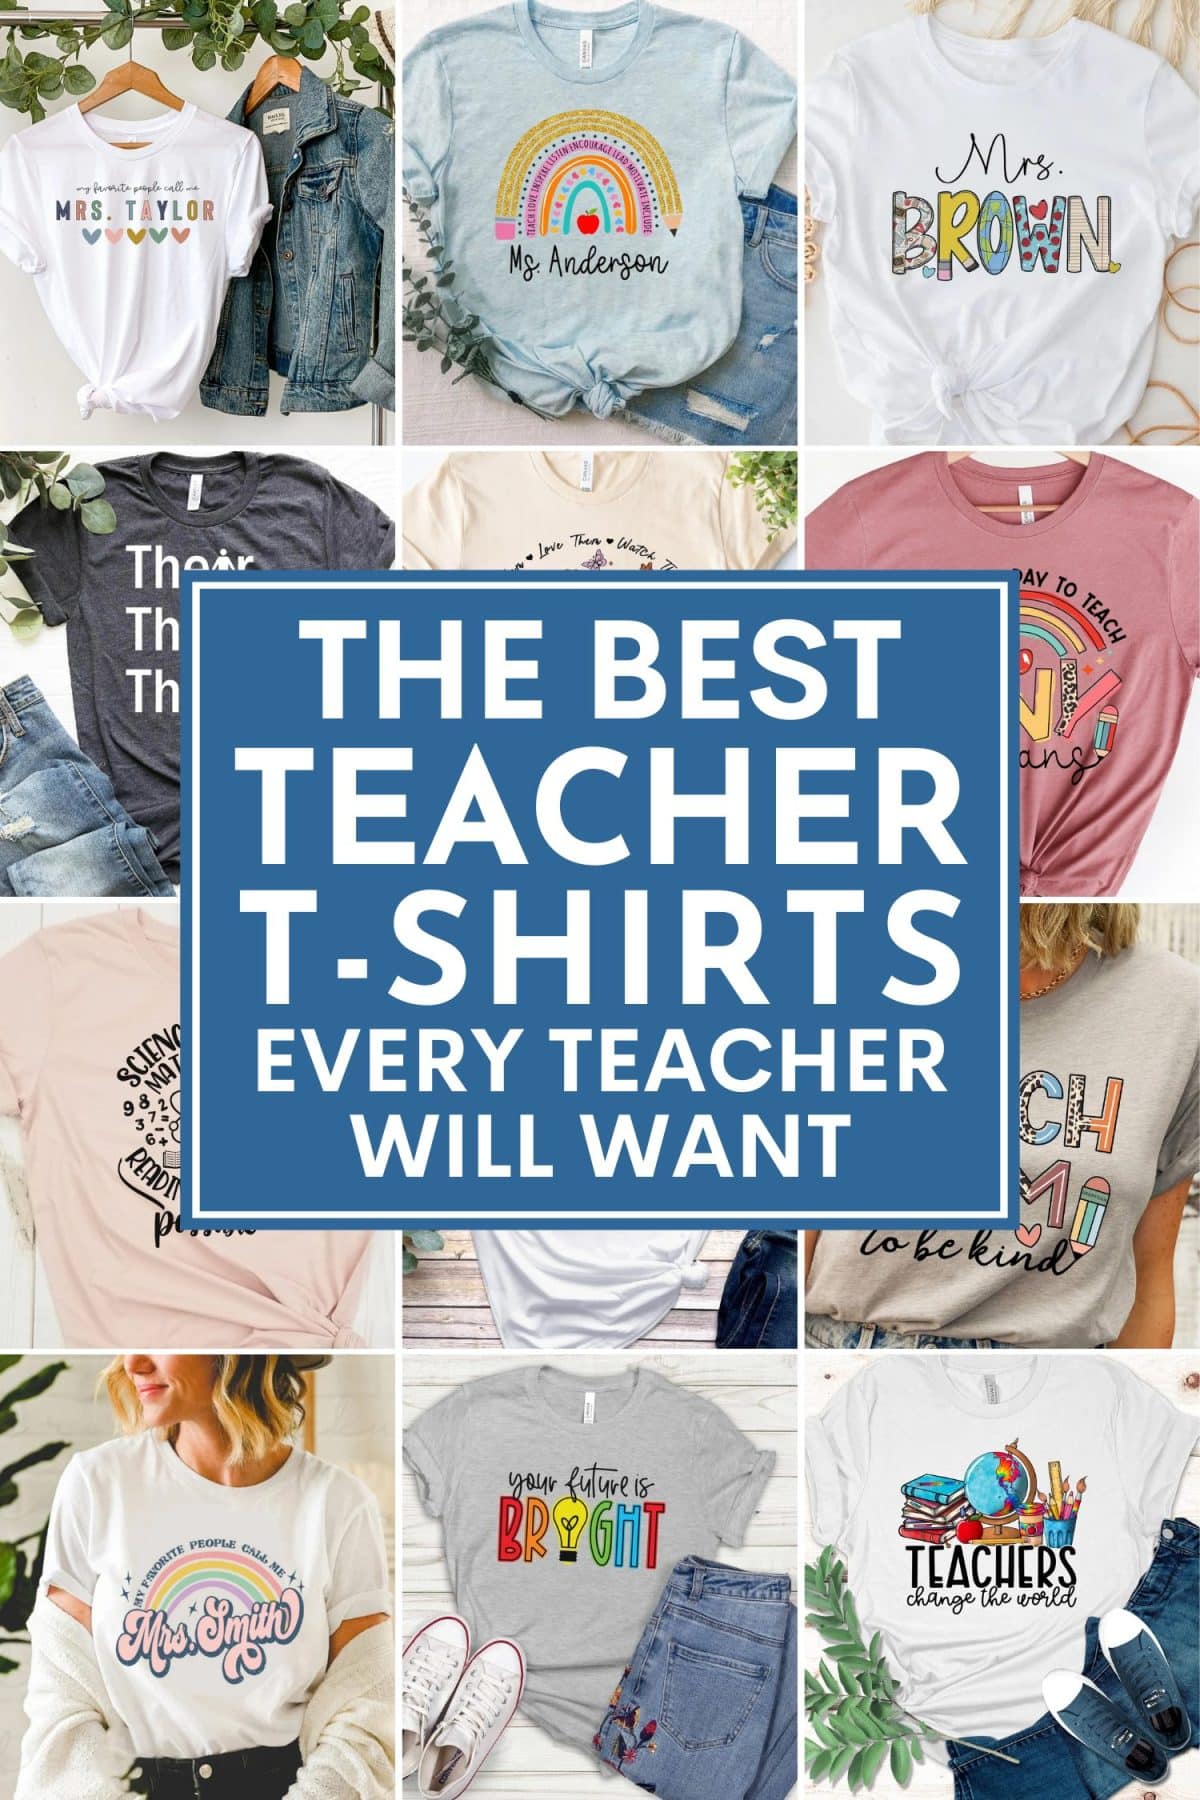 The Best Teacher T-shirts Every Teacher Will Want